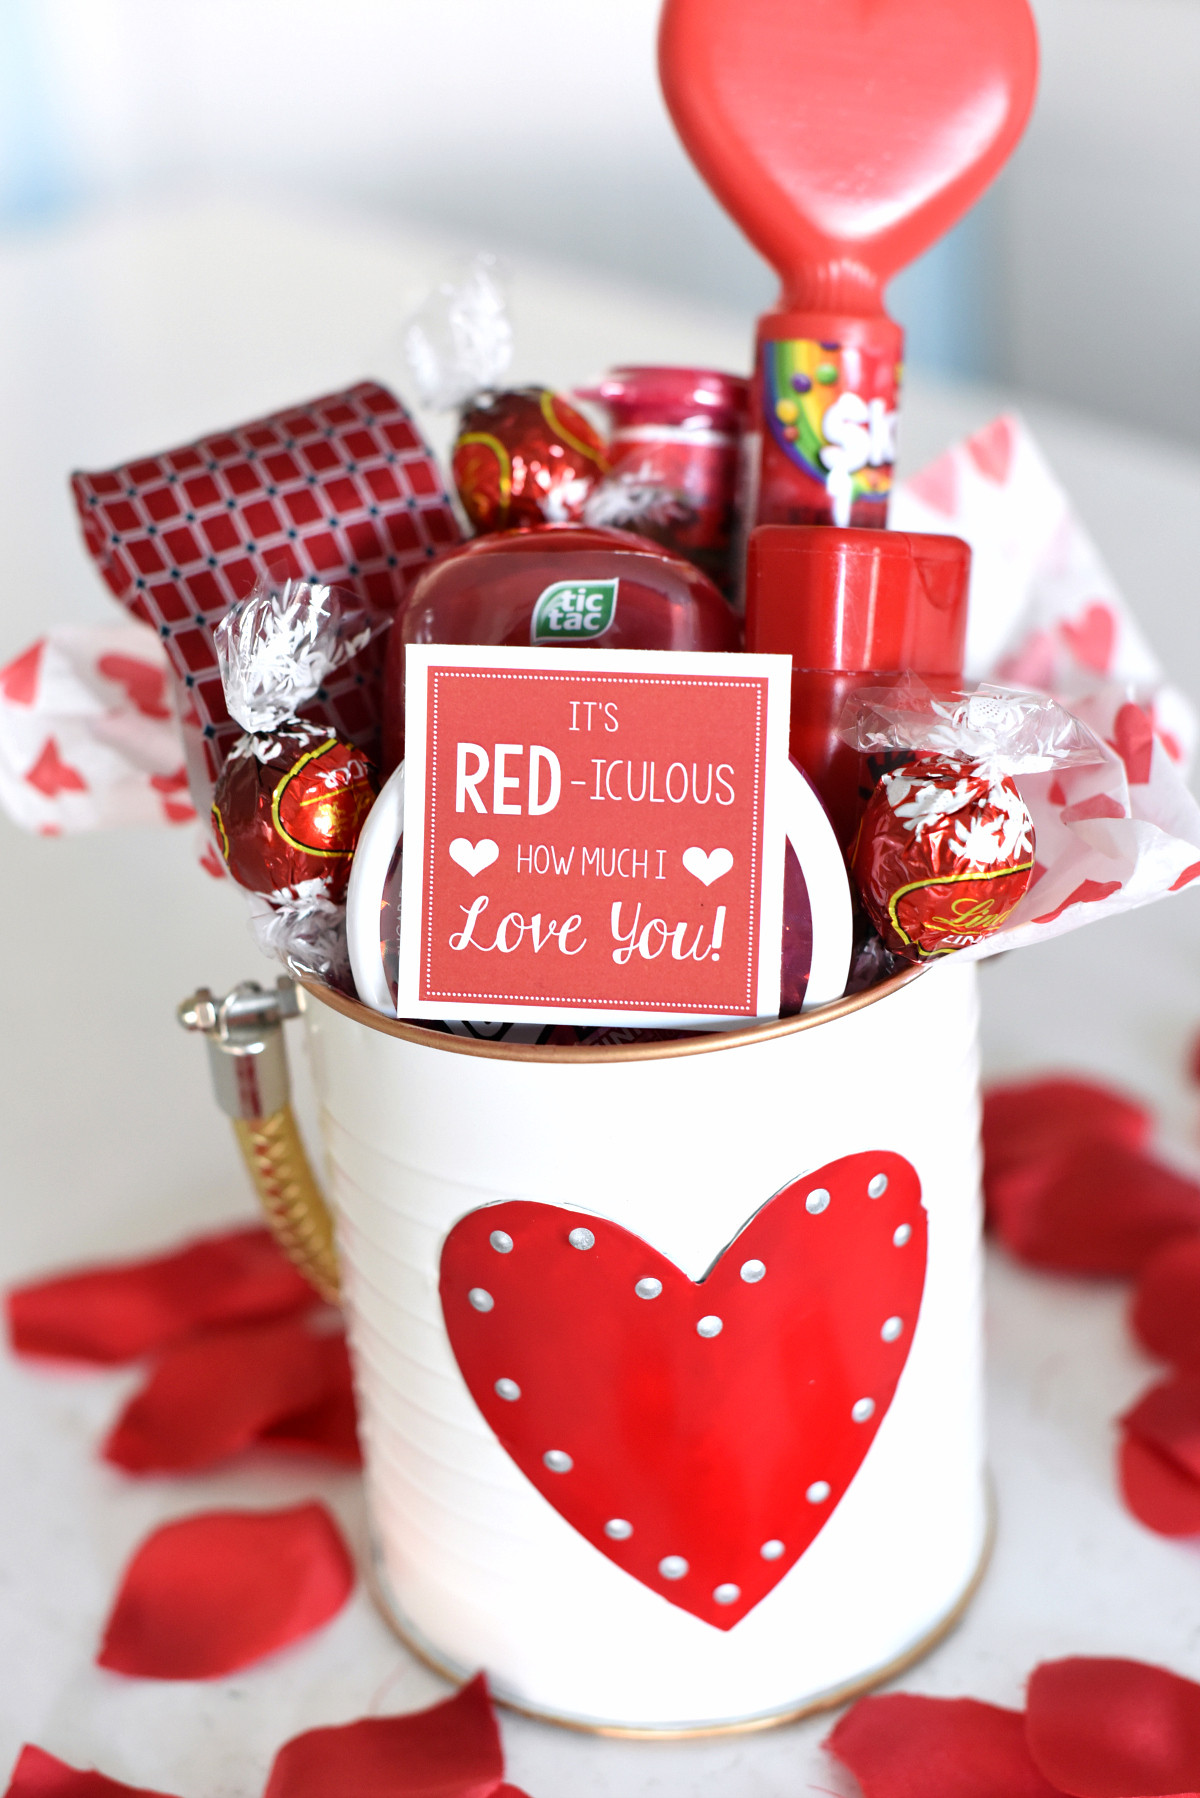 Valentines Day Handmade Gift Ideas
 25 DIY Valentine s Day Gift Ideas Teens Will Love